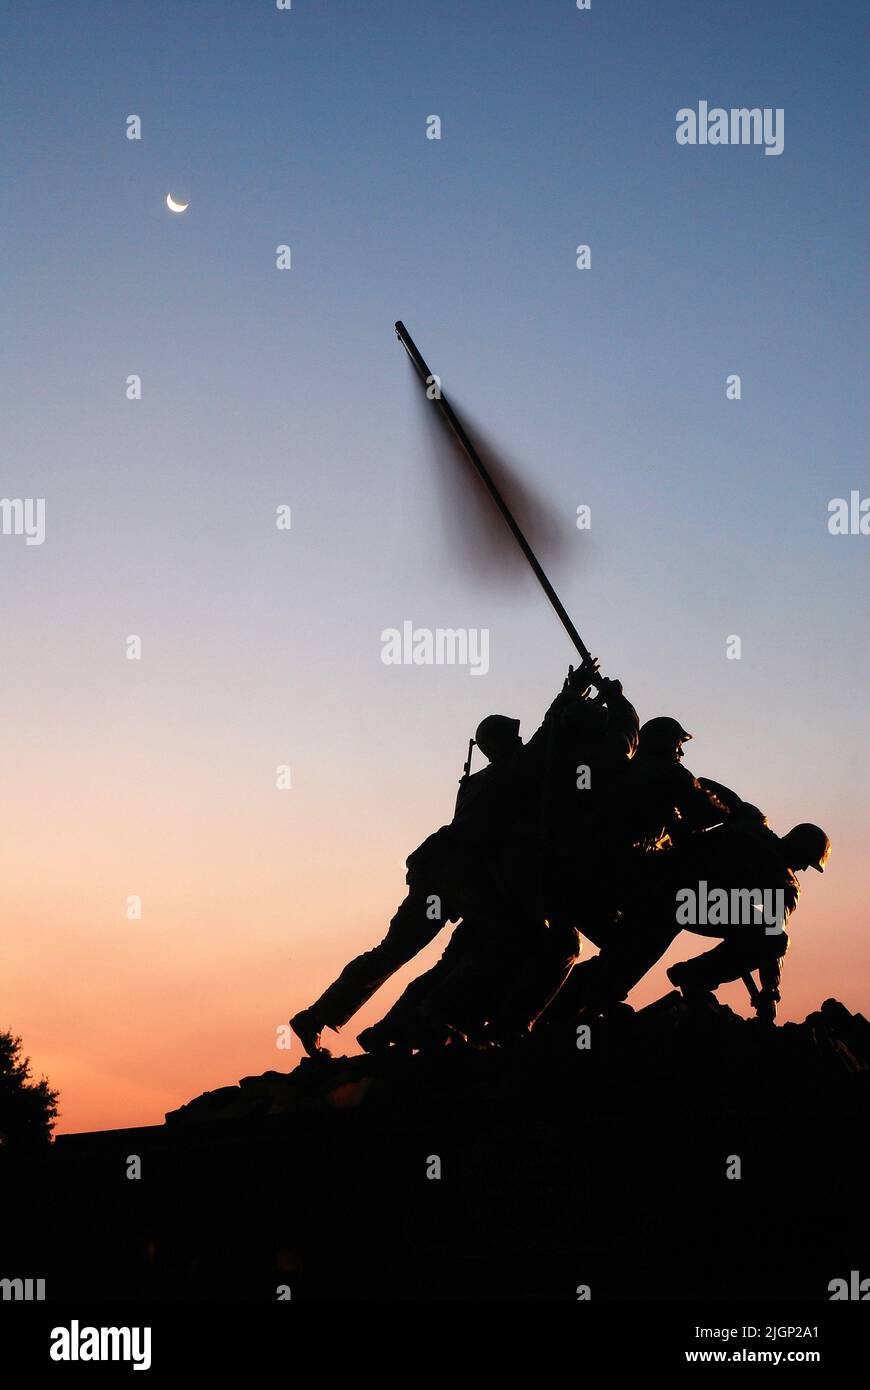 Le United States Marine Corp Memorial, à Arlington Virginia, Washington DC, dépeint la levée du drapeau sur Iwo Jima, recréant la célèbre photo Banque D'Images